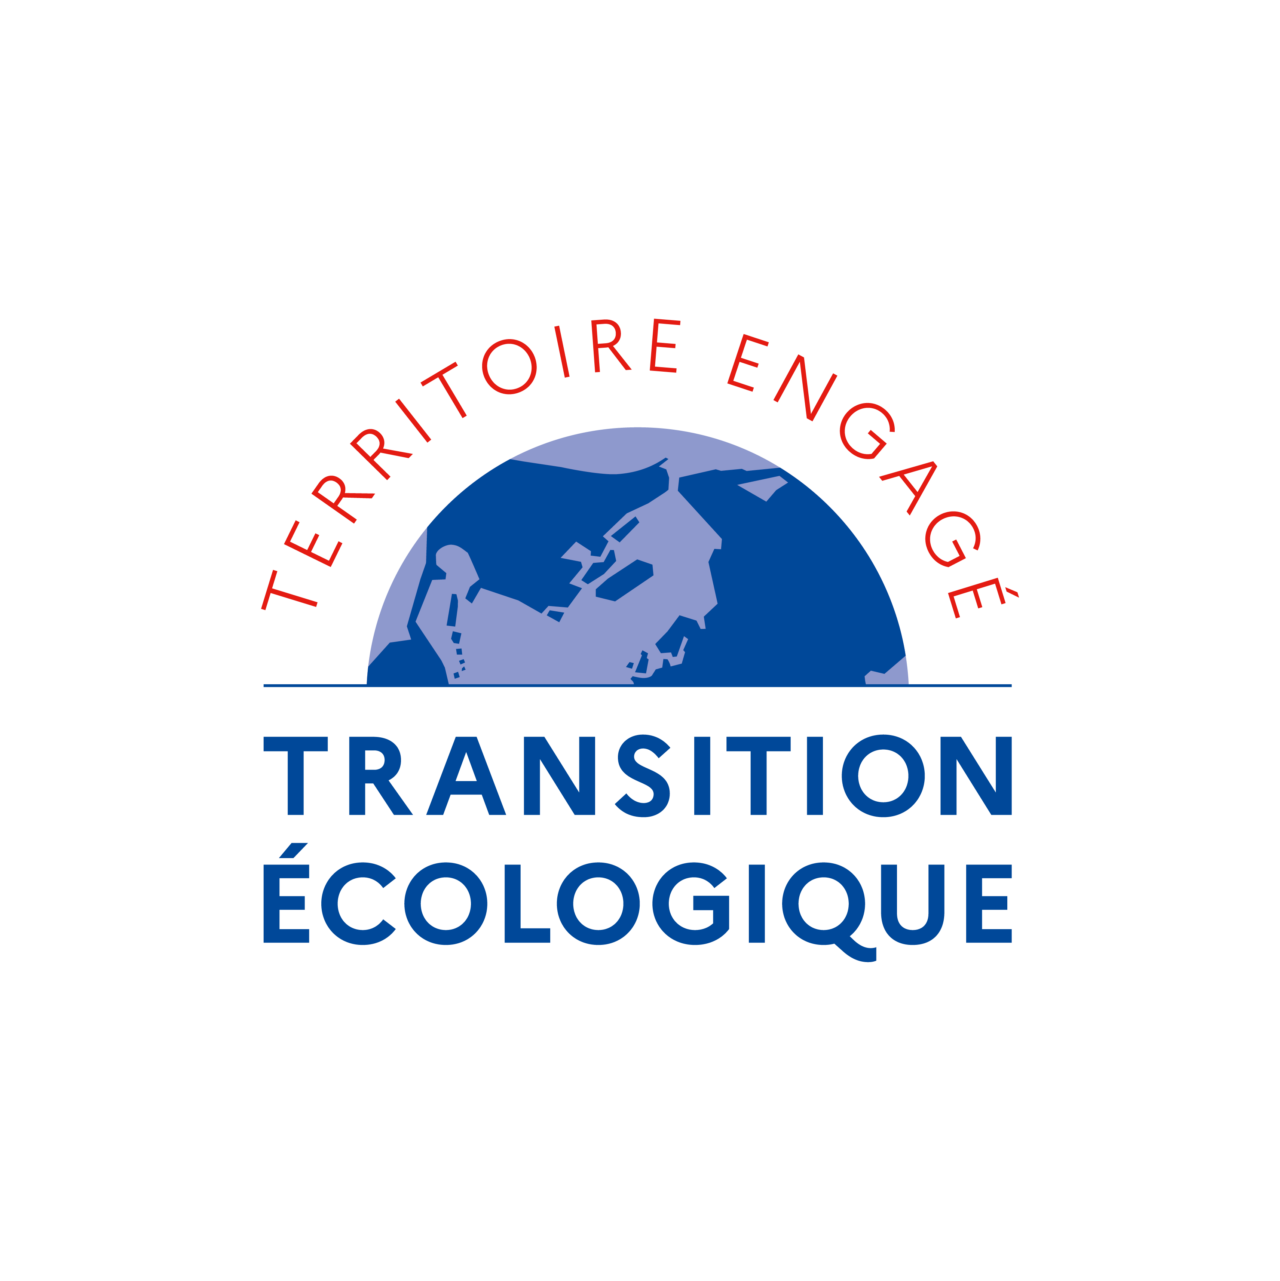 Territoires engagés Transition écologique climat air énergie